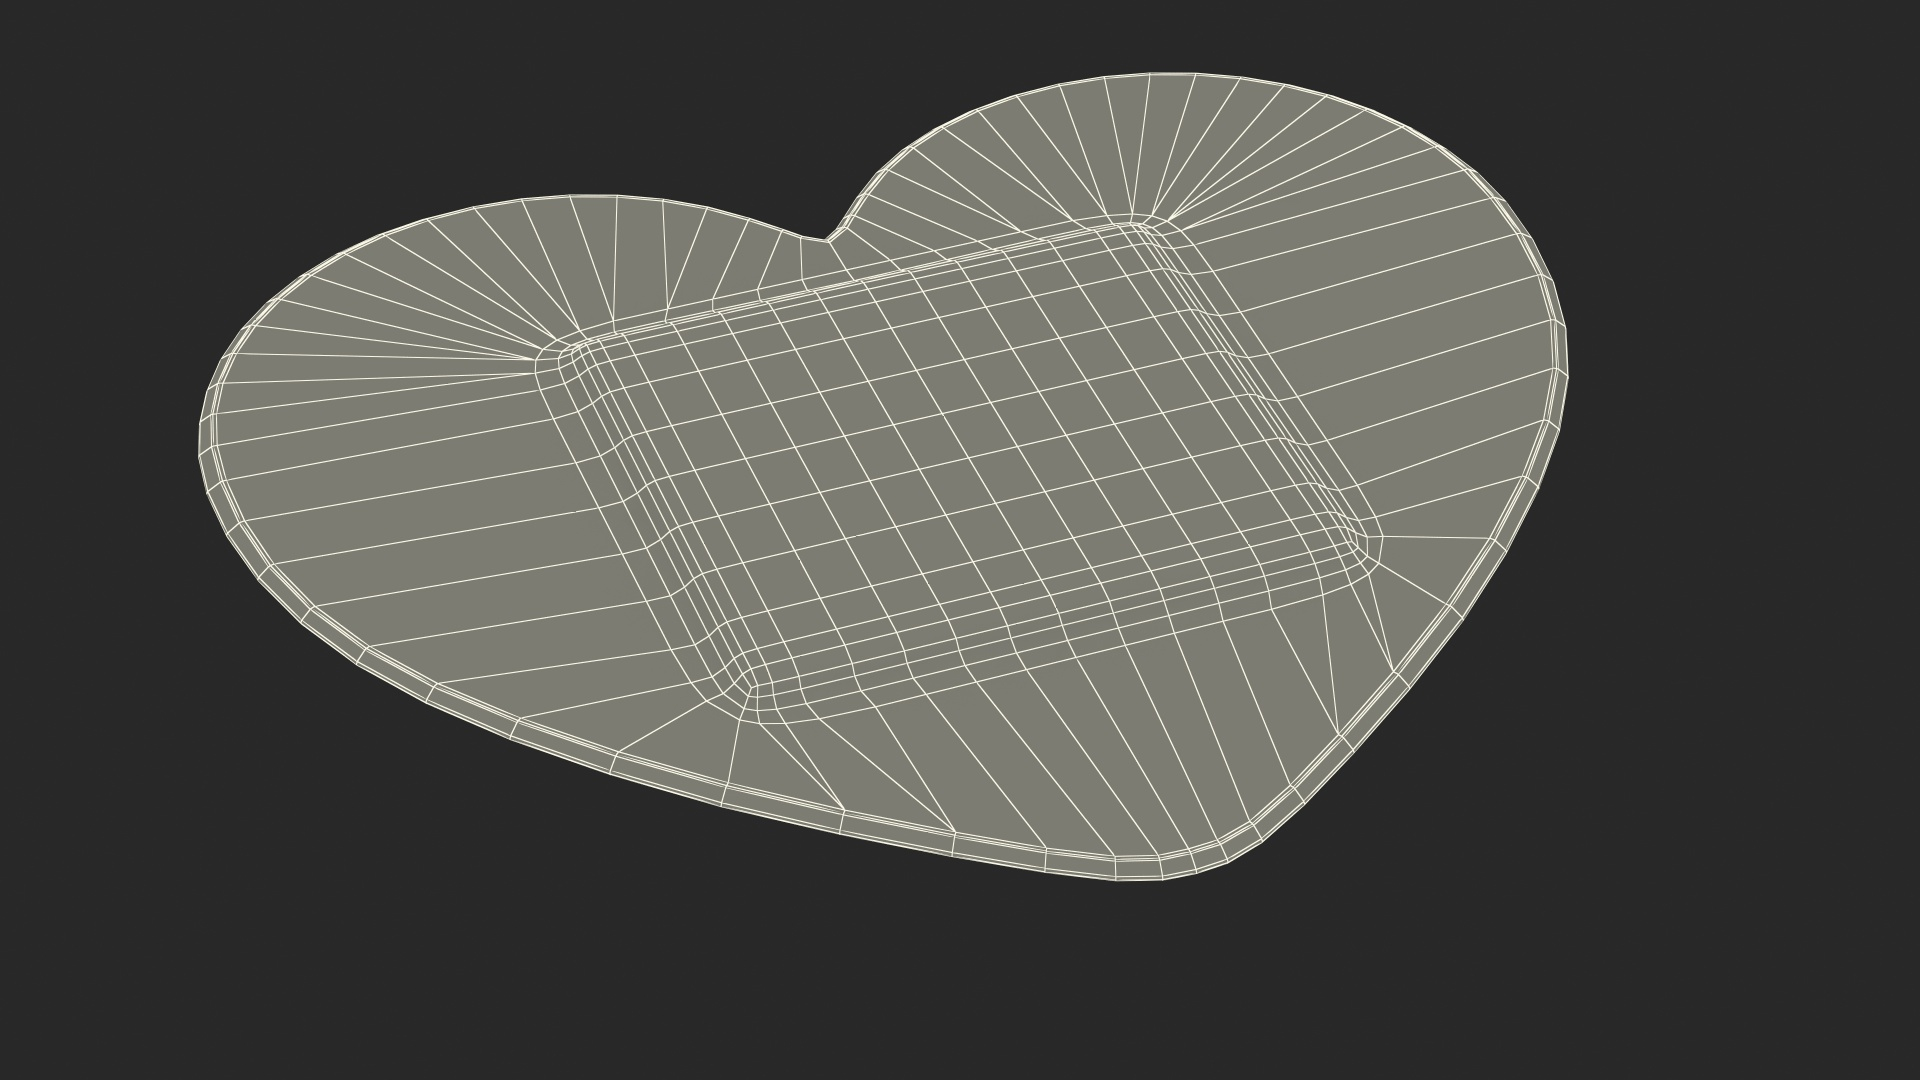 heart shaped band aids